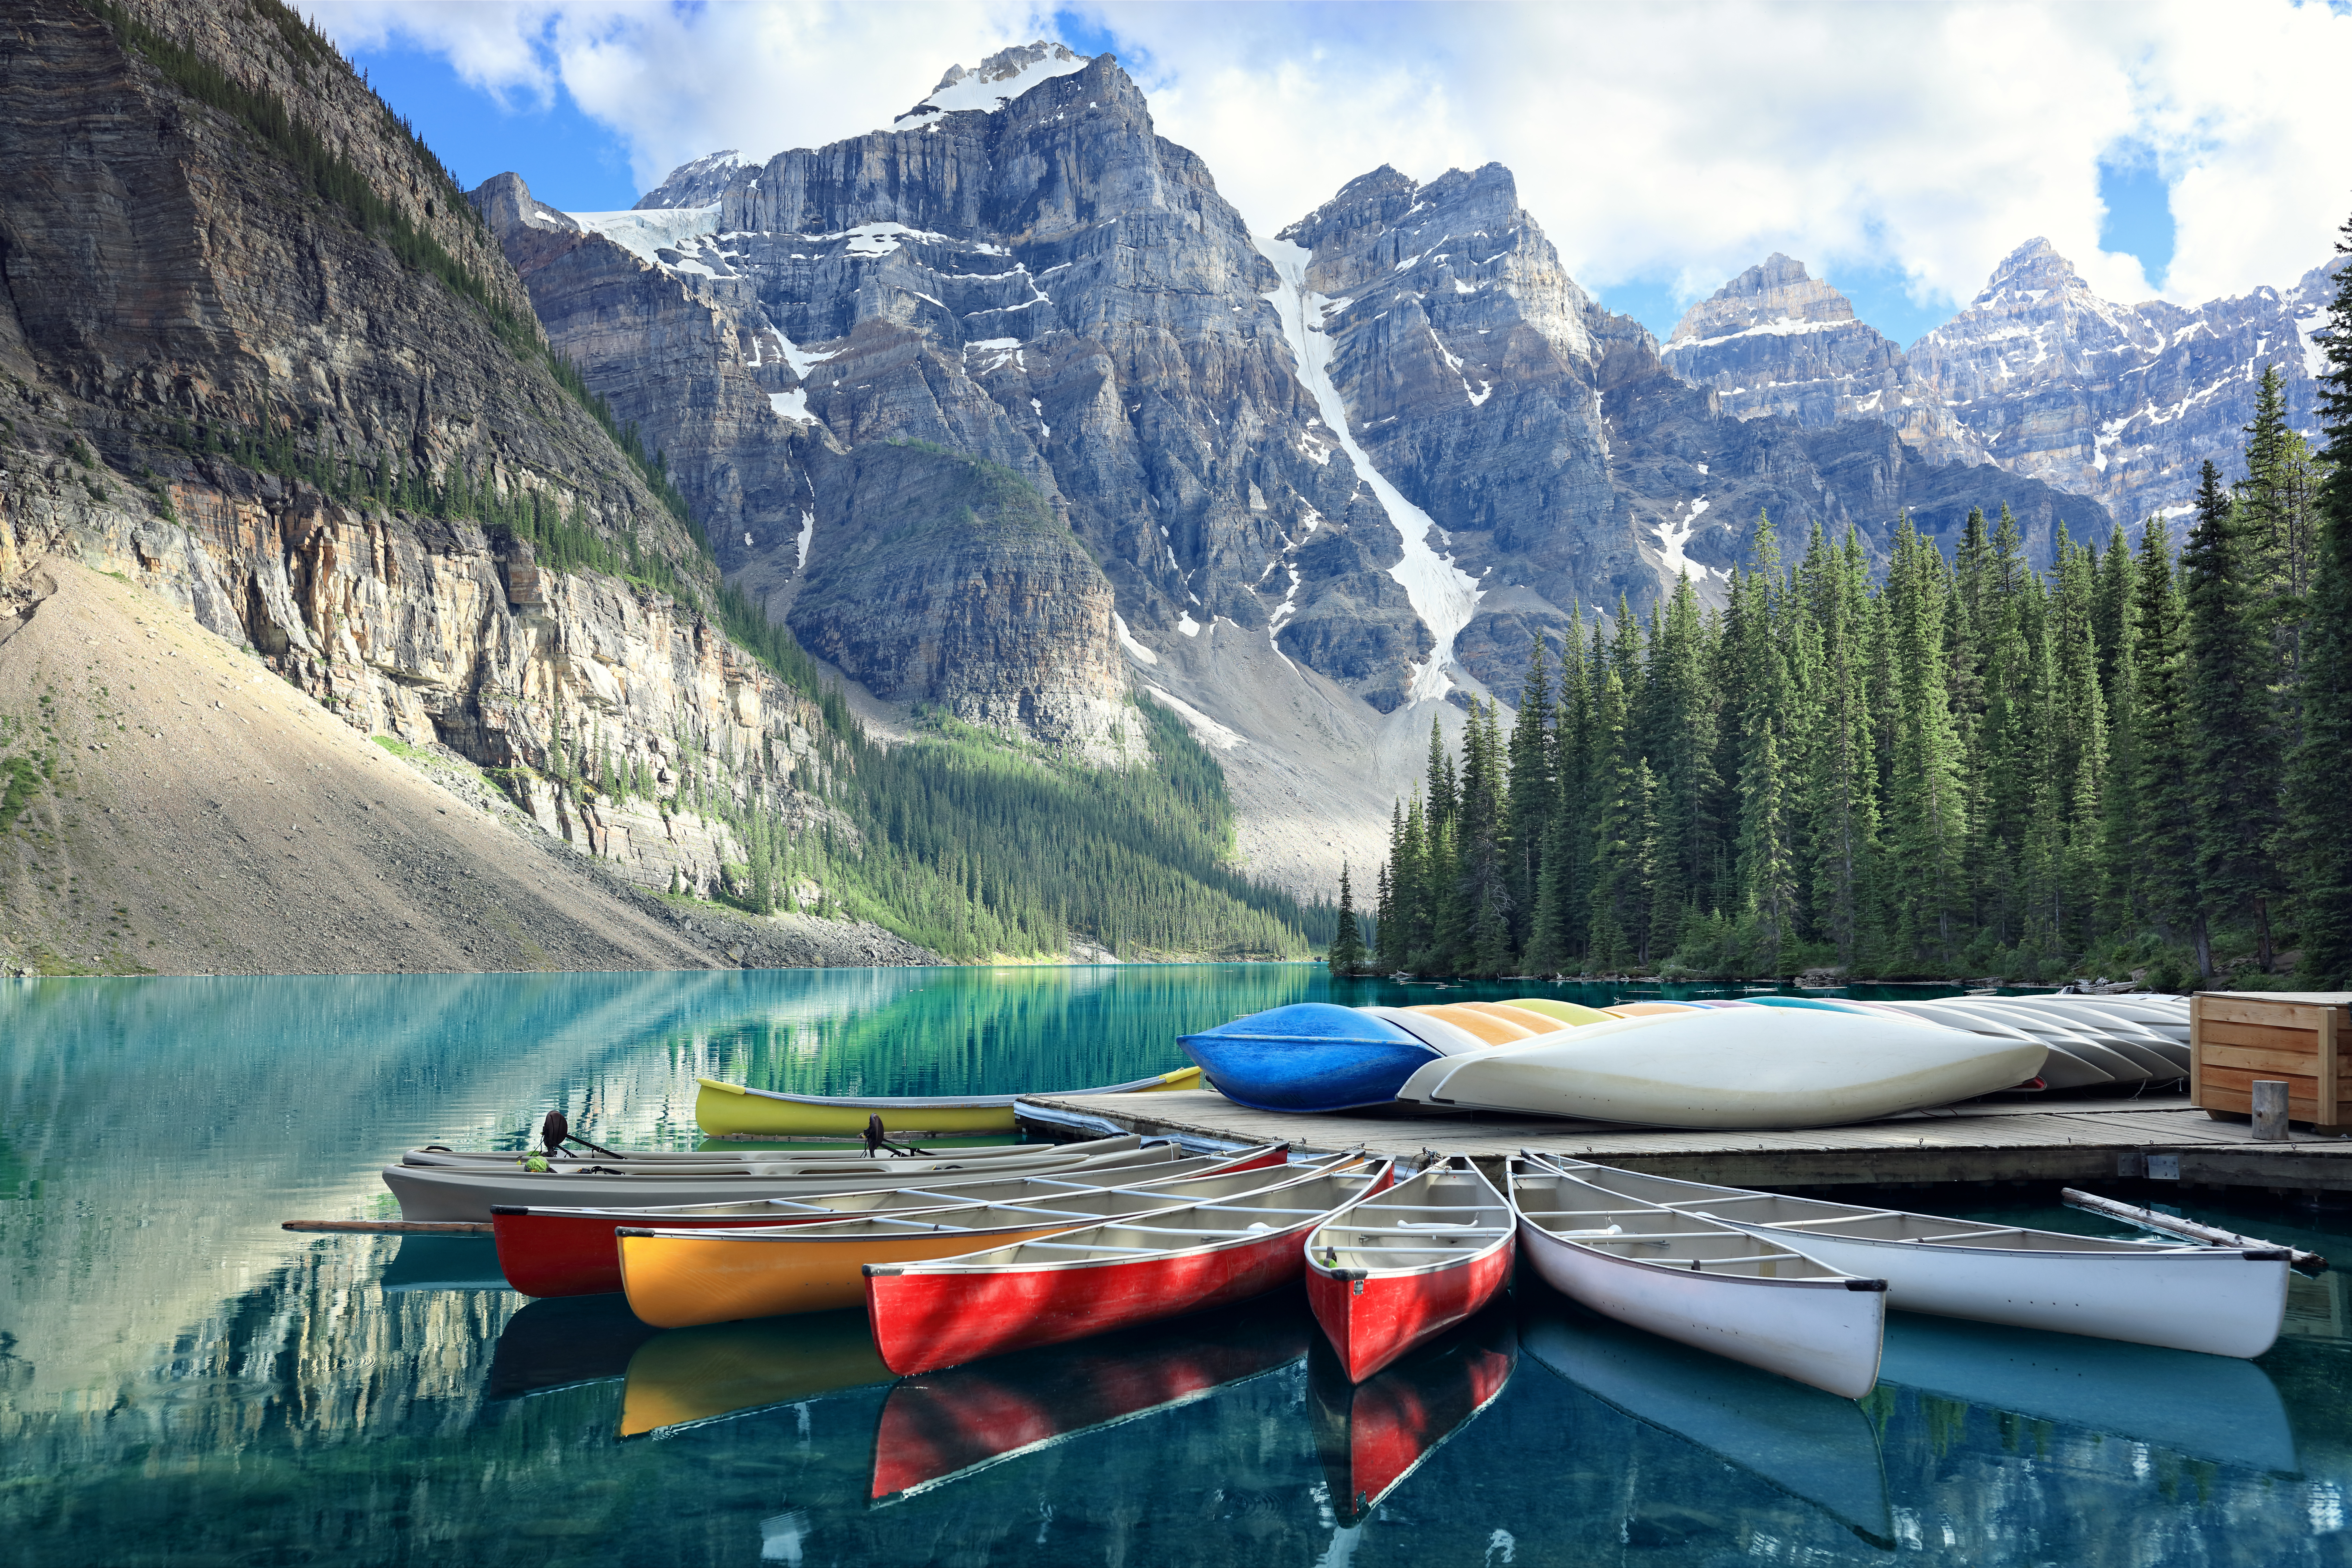 En el Parque Nacional de Banff puedes alquilar canoas para navegar. (Foto: Istock)